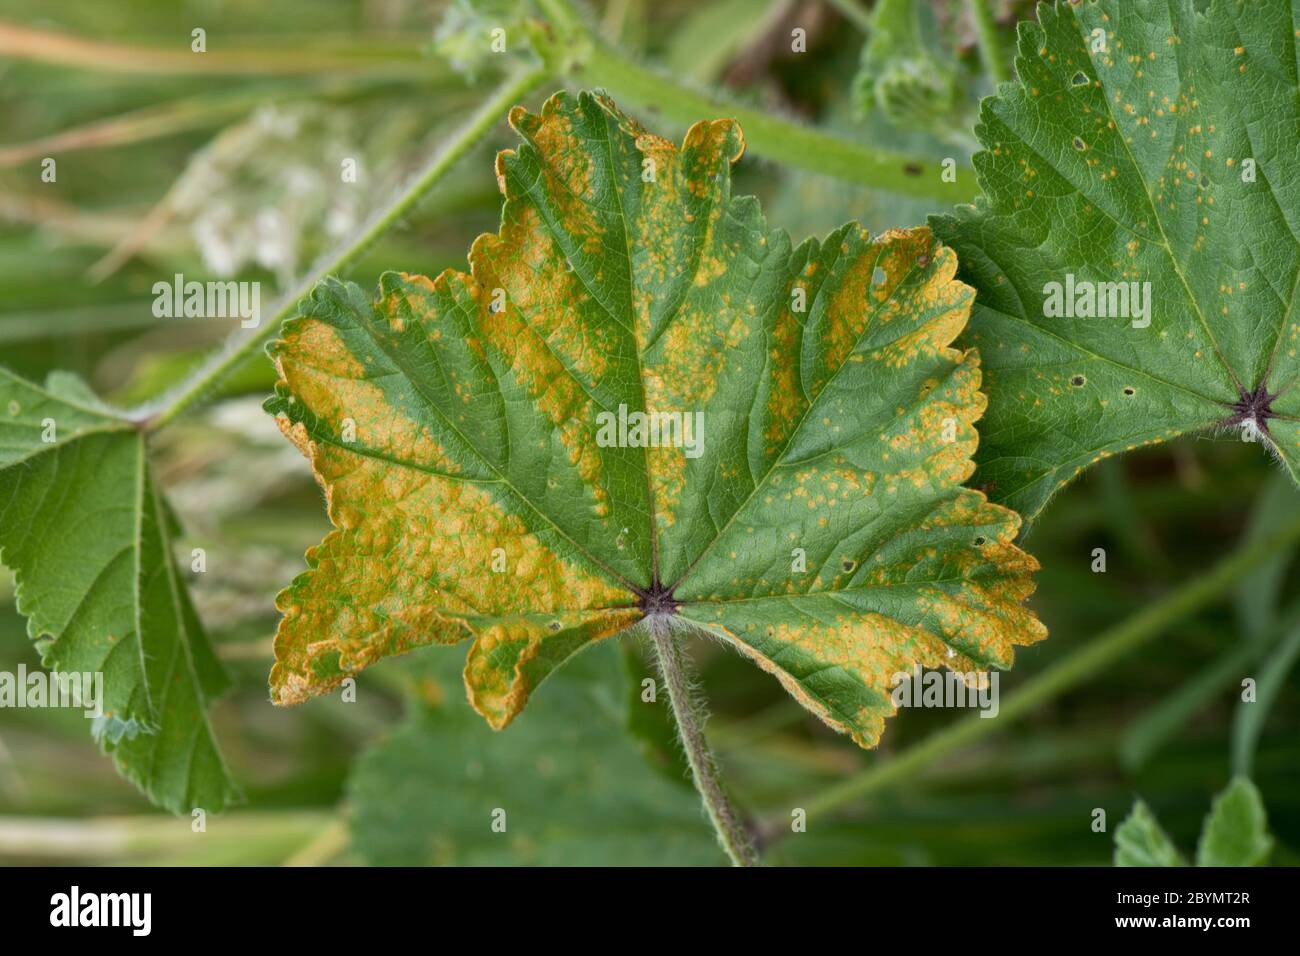 Rouille du mérin (Puccinia malvacearum) lésions nécrotiques sur la surface supérieure d'une feuille de mérins communs (Malva negecta), Berkshire, juin Banque D'Images